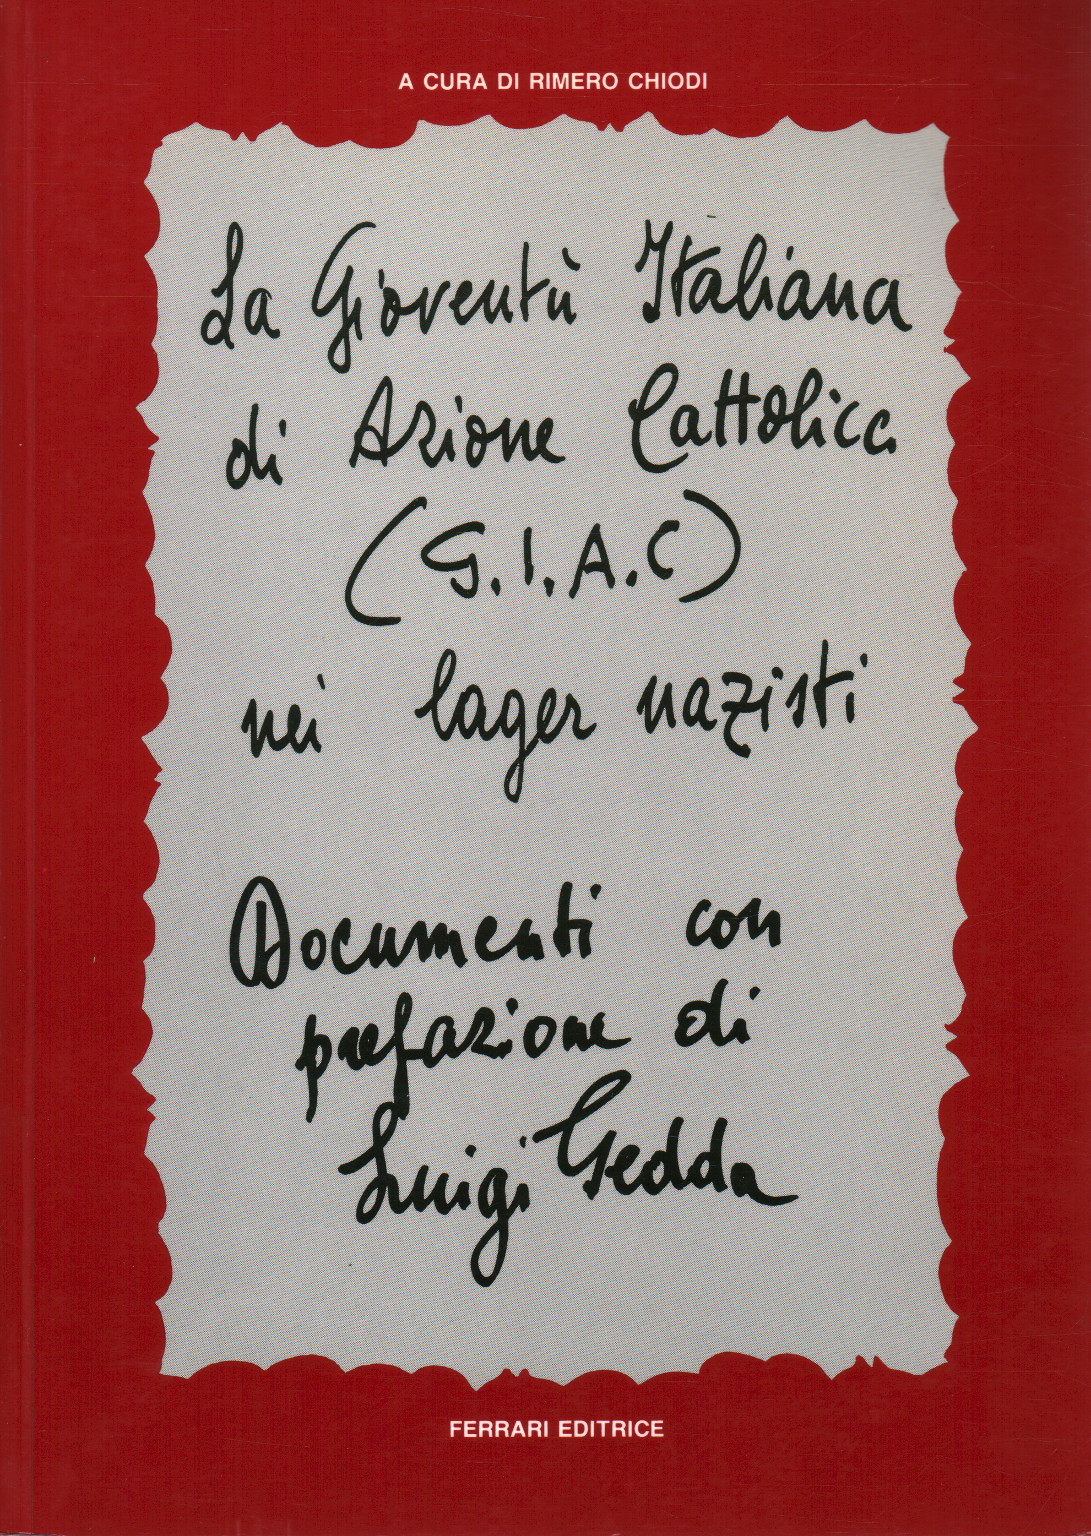 G. I. A. C. El italiano de la juventud de Acción católica, s.una.